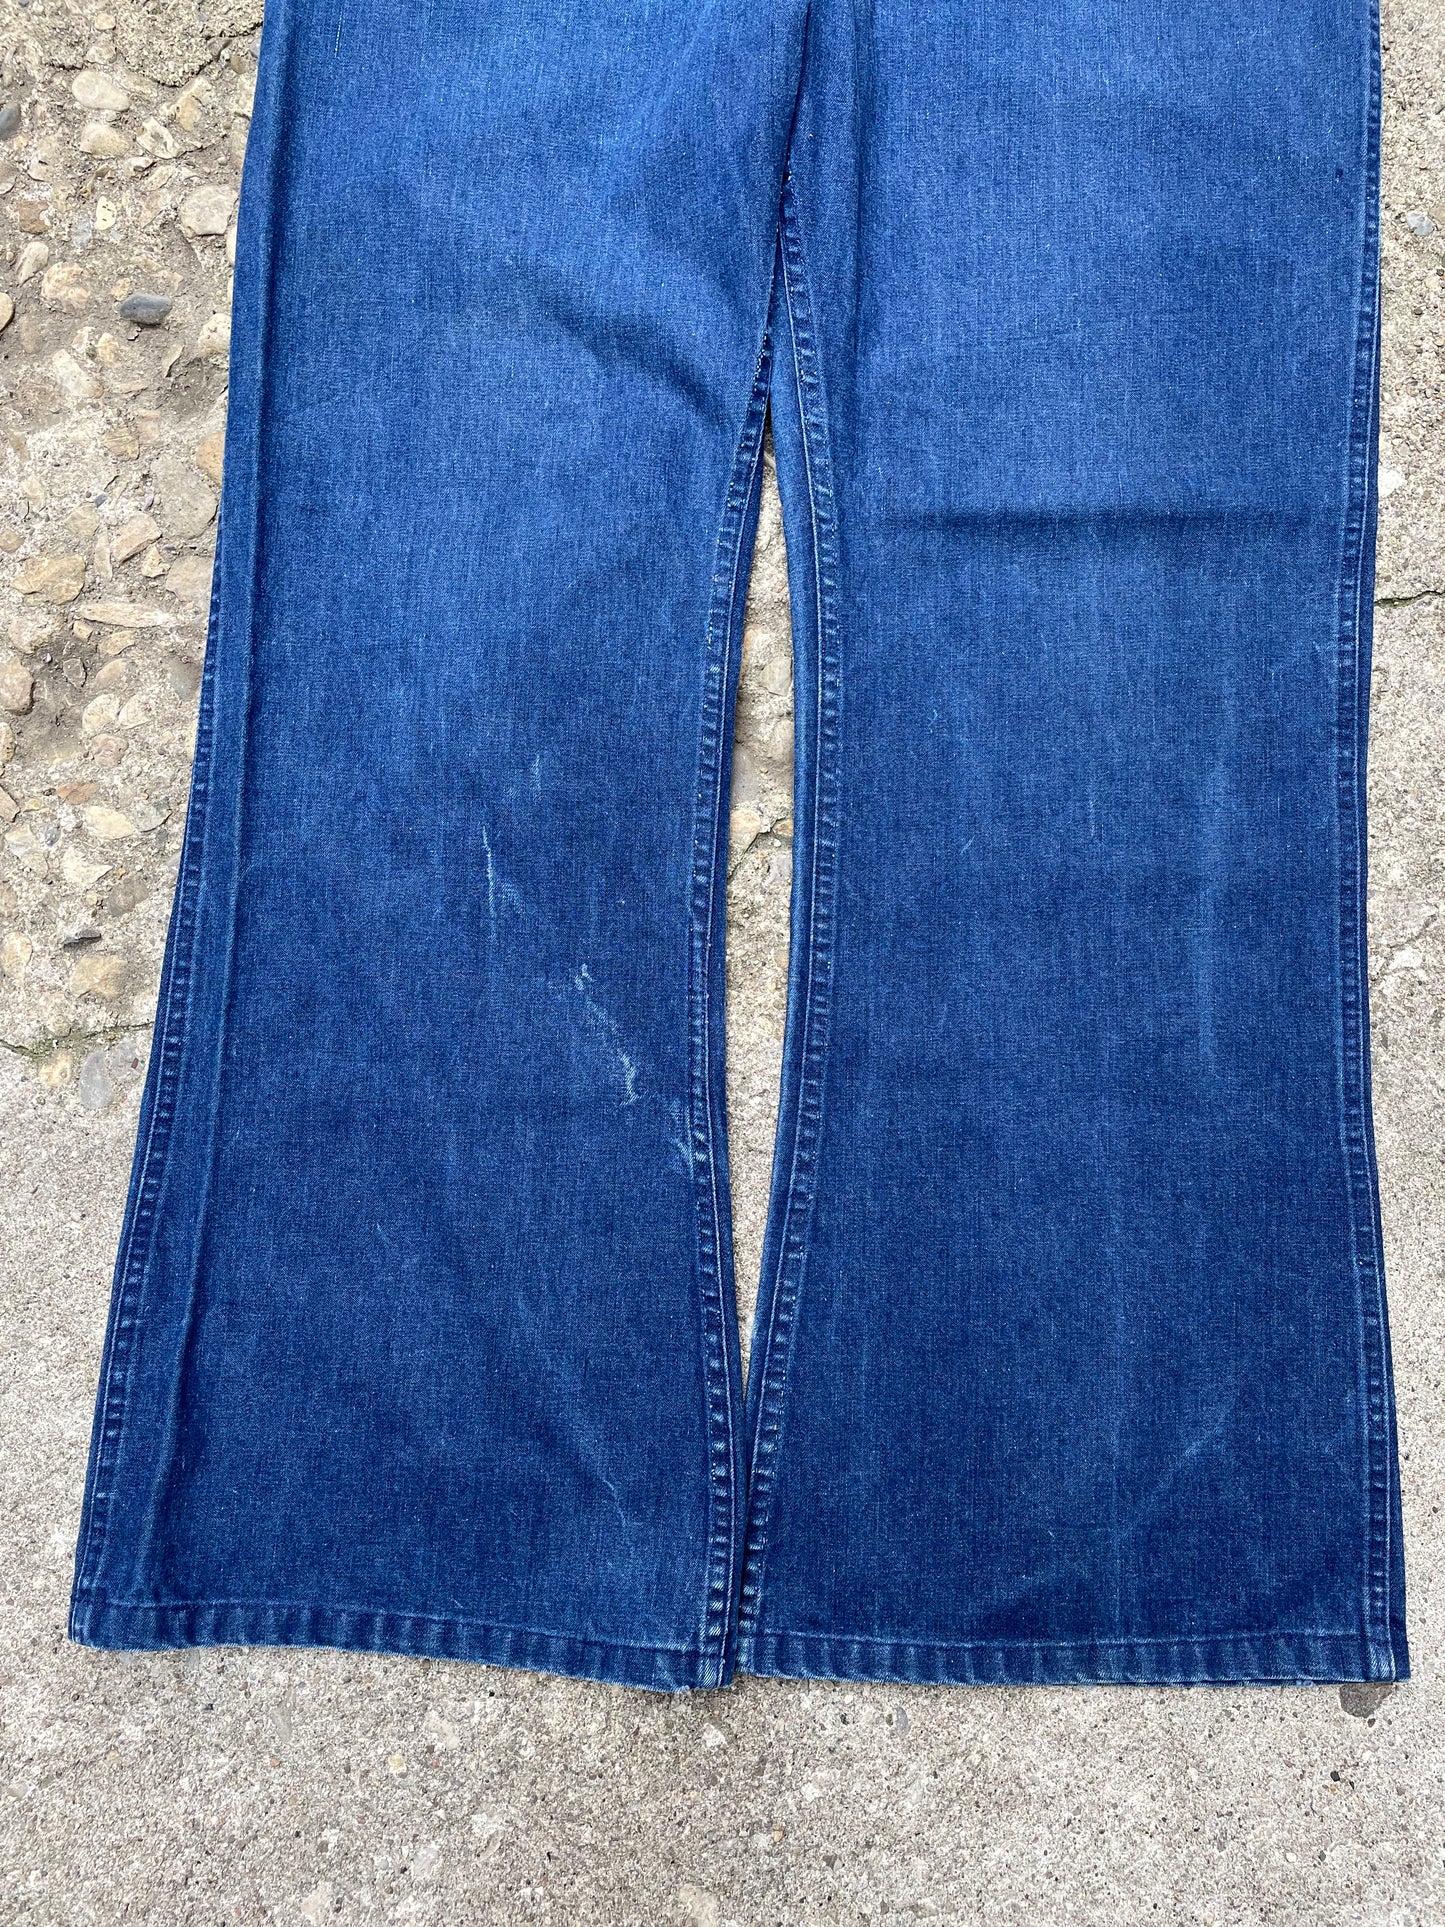 1968 U.S. Navy Stencilled Denim Deck Jeans - 37